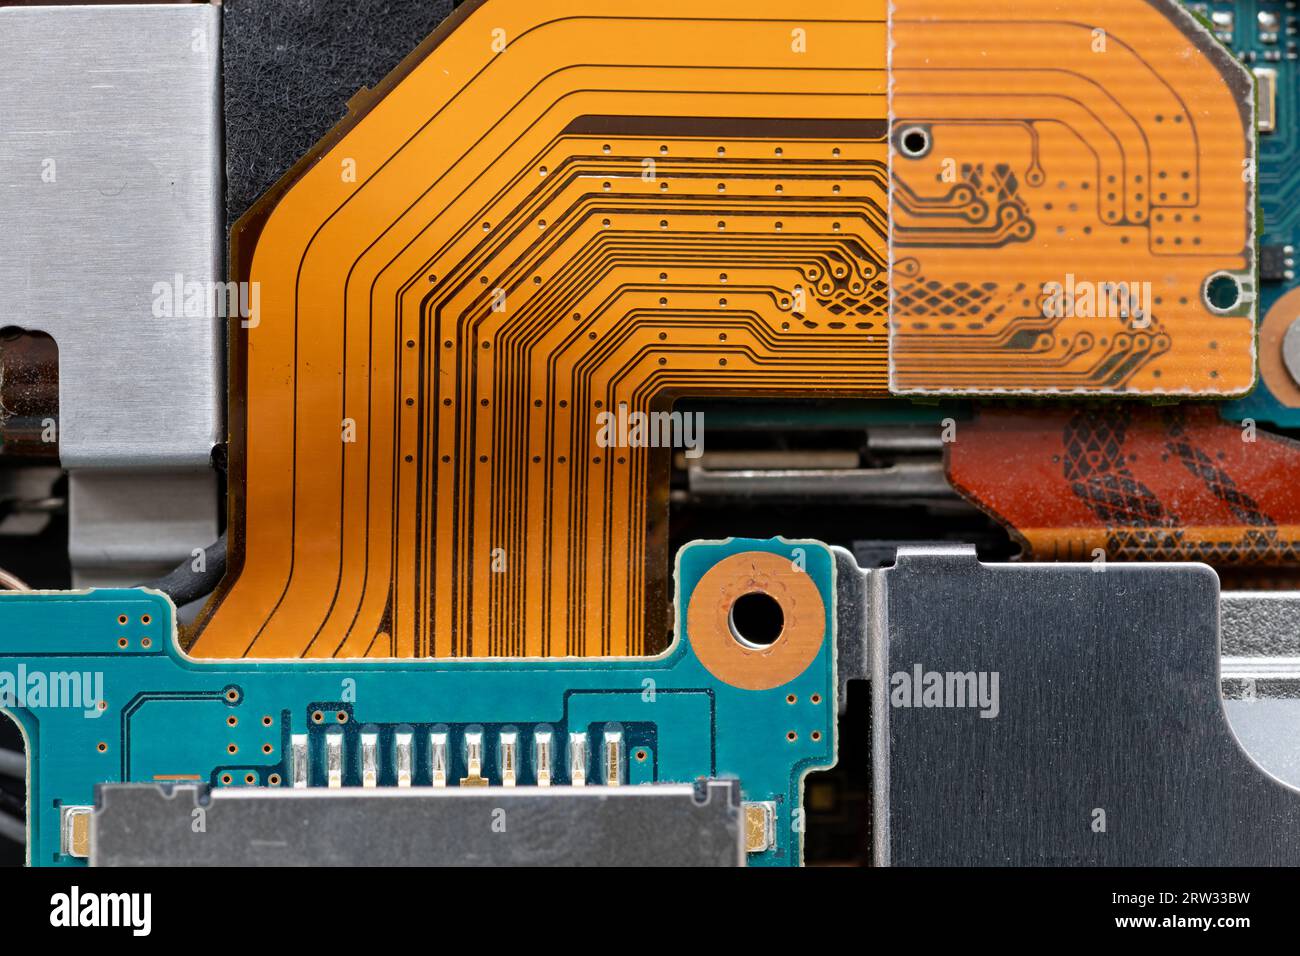 Das Innere eines elektronischen Geräts, das die Halbleiterplatine, den Chip und verschiedene Teile zeigt. Stockfoto